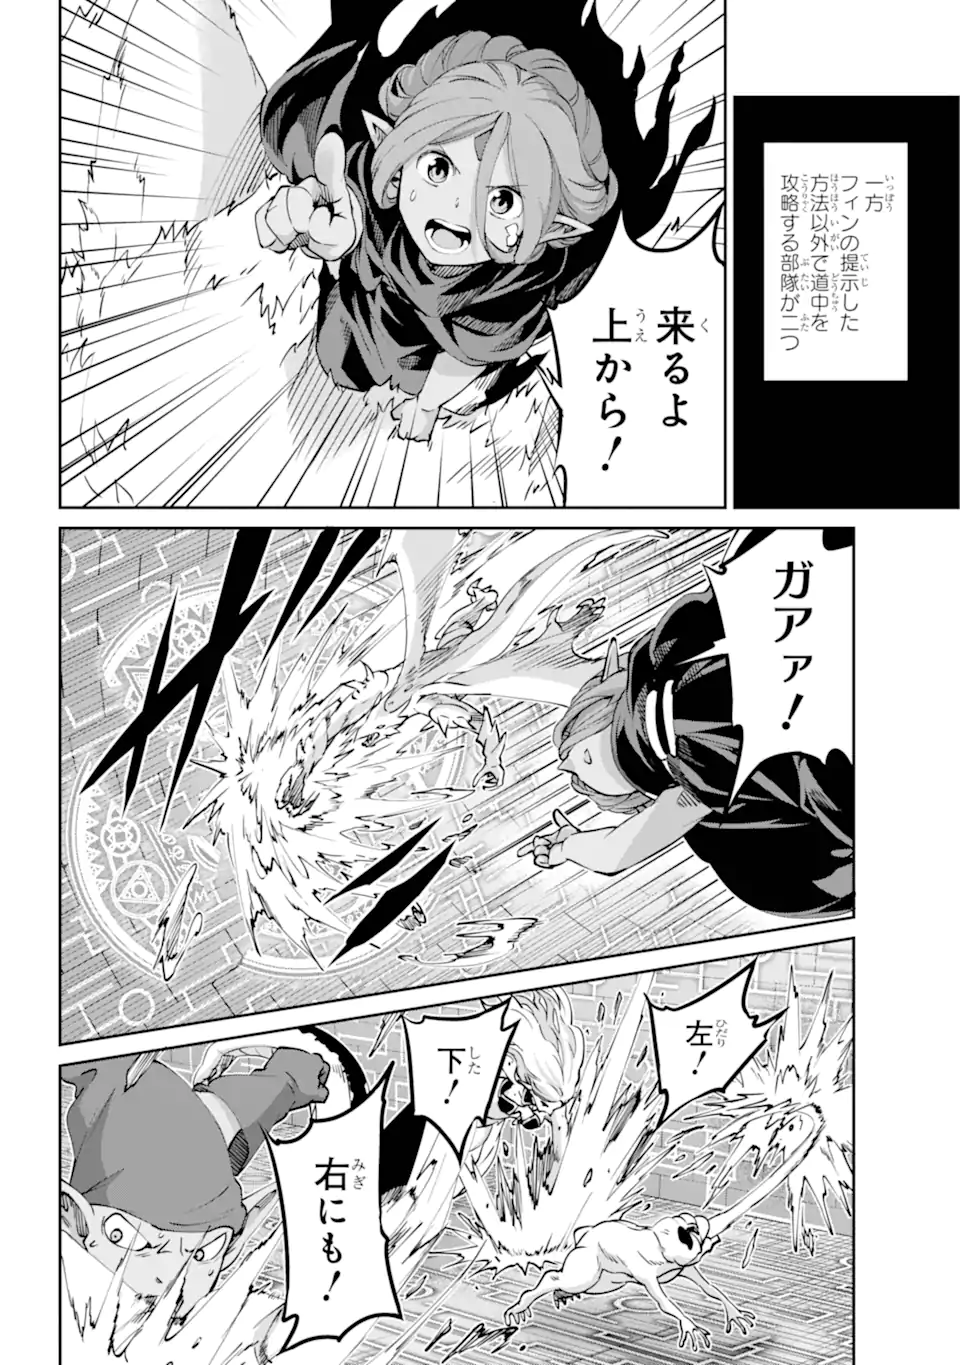 Dungeon ni Deai wo Motomeru no wa Machigatte Iru Darou ka Gaiden - Sword Oratoria - Chapter 117.3 - Page 5